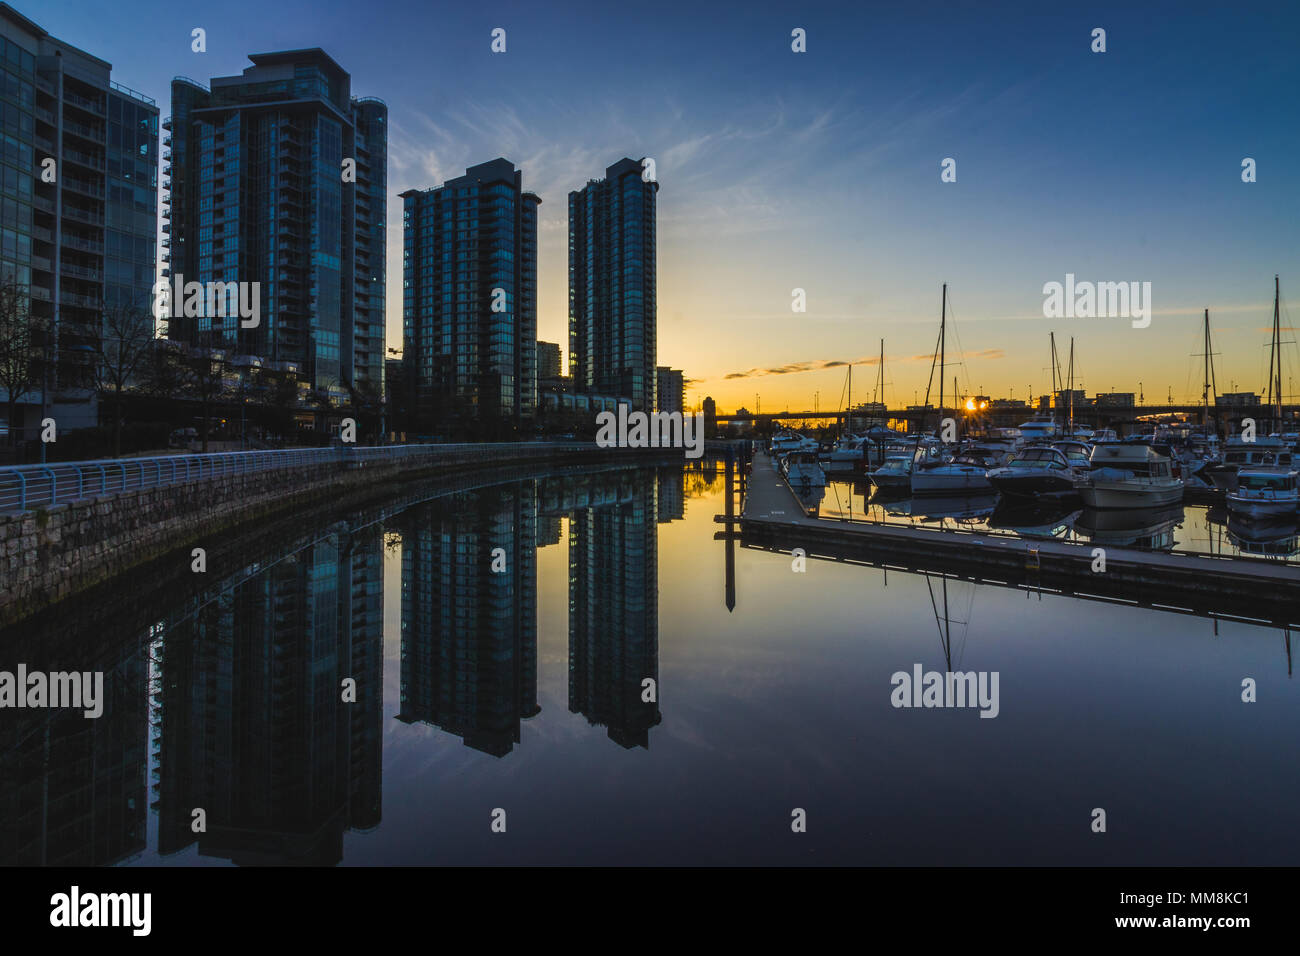 Belle Ville de Marina Quai prises au lever du soleil avec des réflexions de bâtiments et de bateaux dans l'eau calme, Vancouver, Colombie-Britannique Banque D'Images